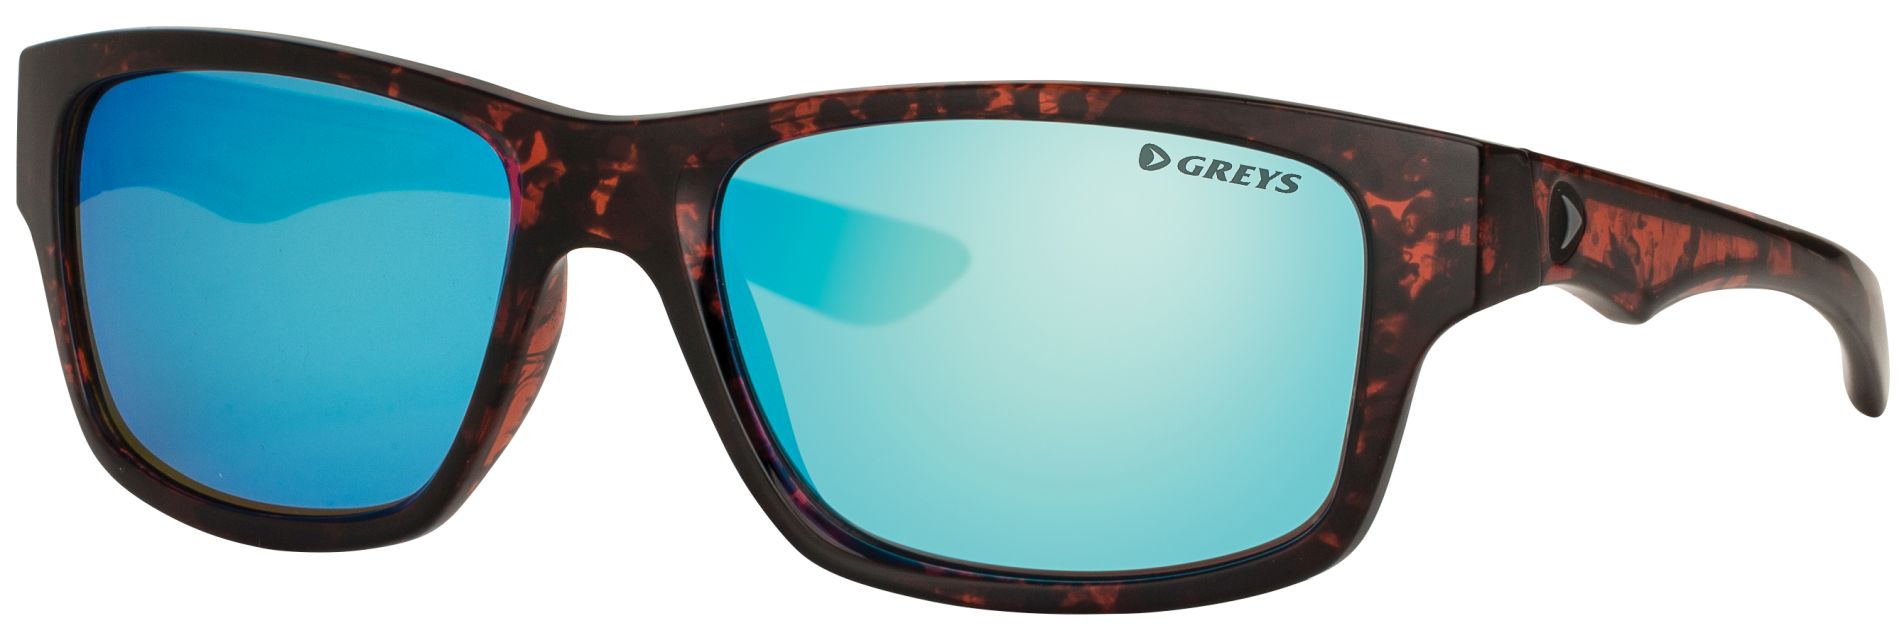 Sluneční brýle Greys G4 GLOSS TORTOISE/BL MIRROR